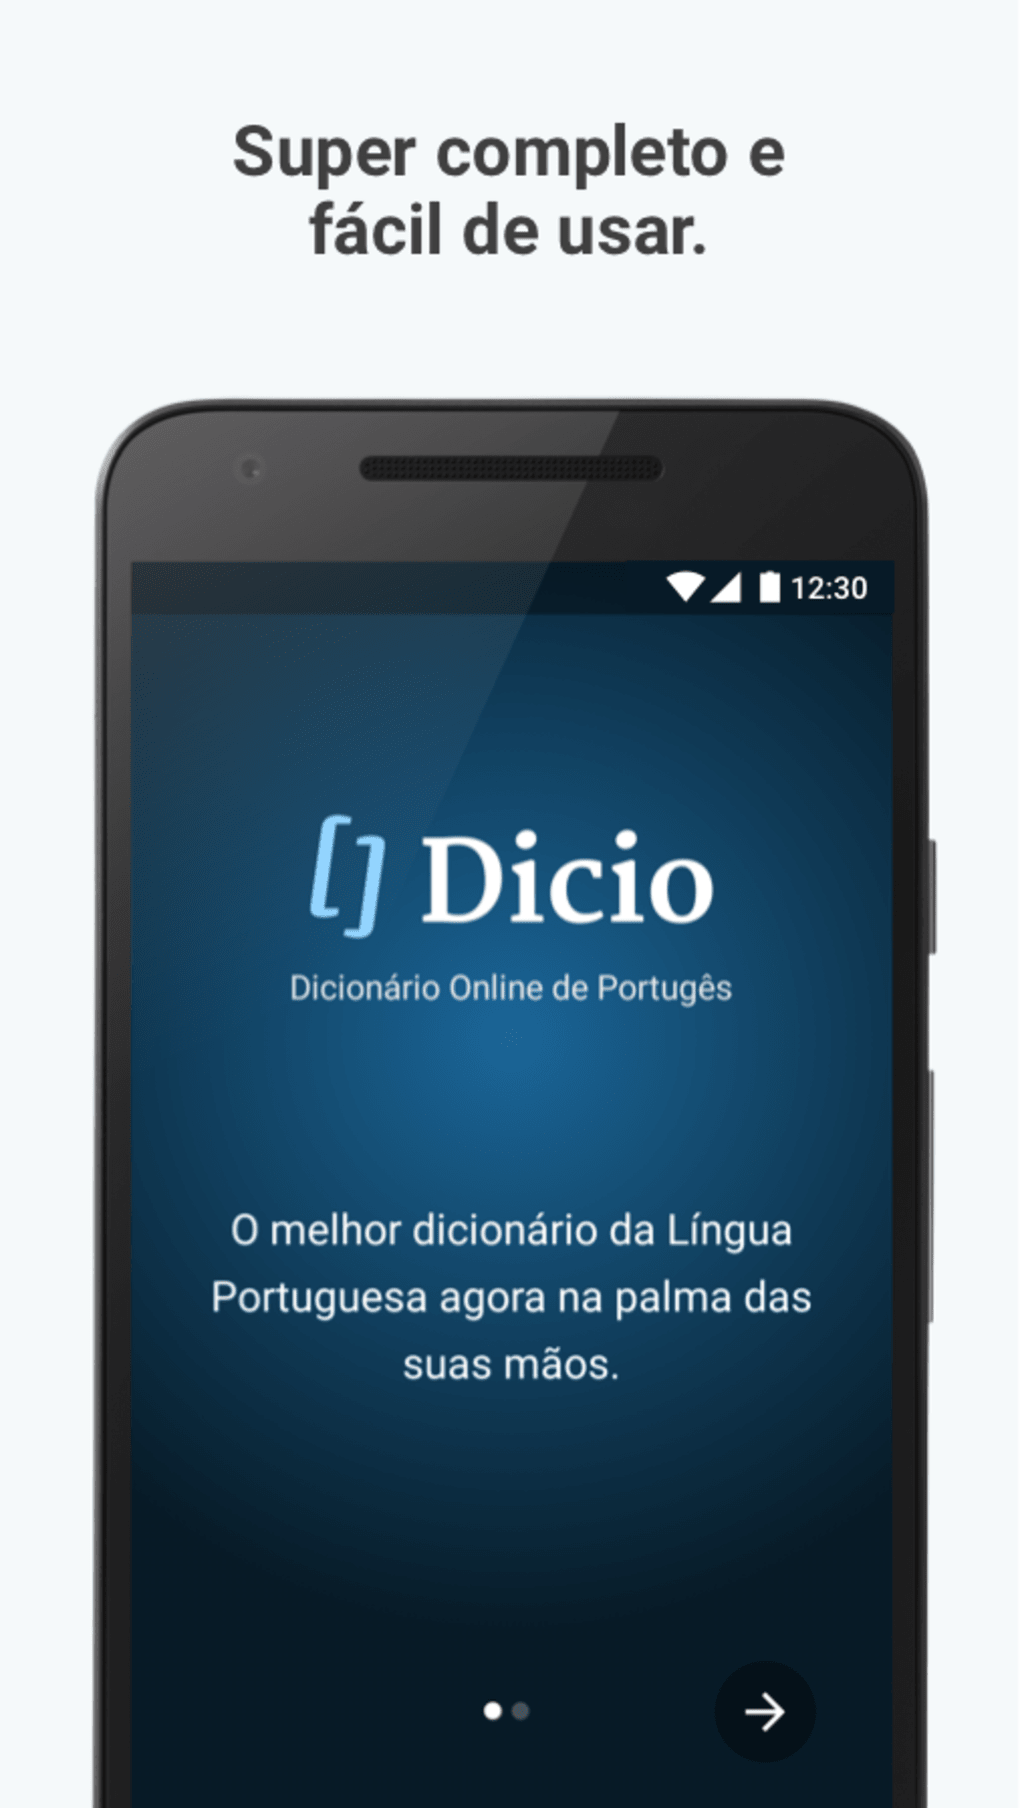 Espeque - Dicio, Dicionário Online de Português